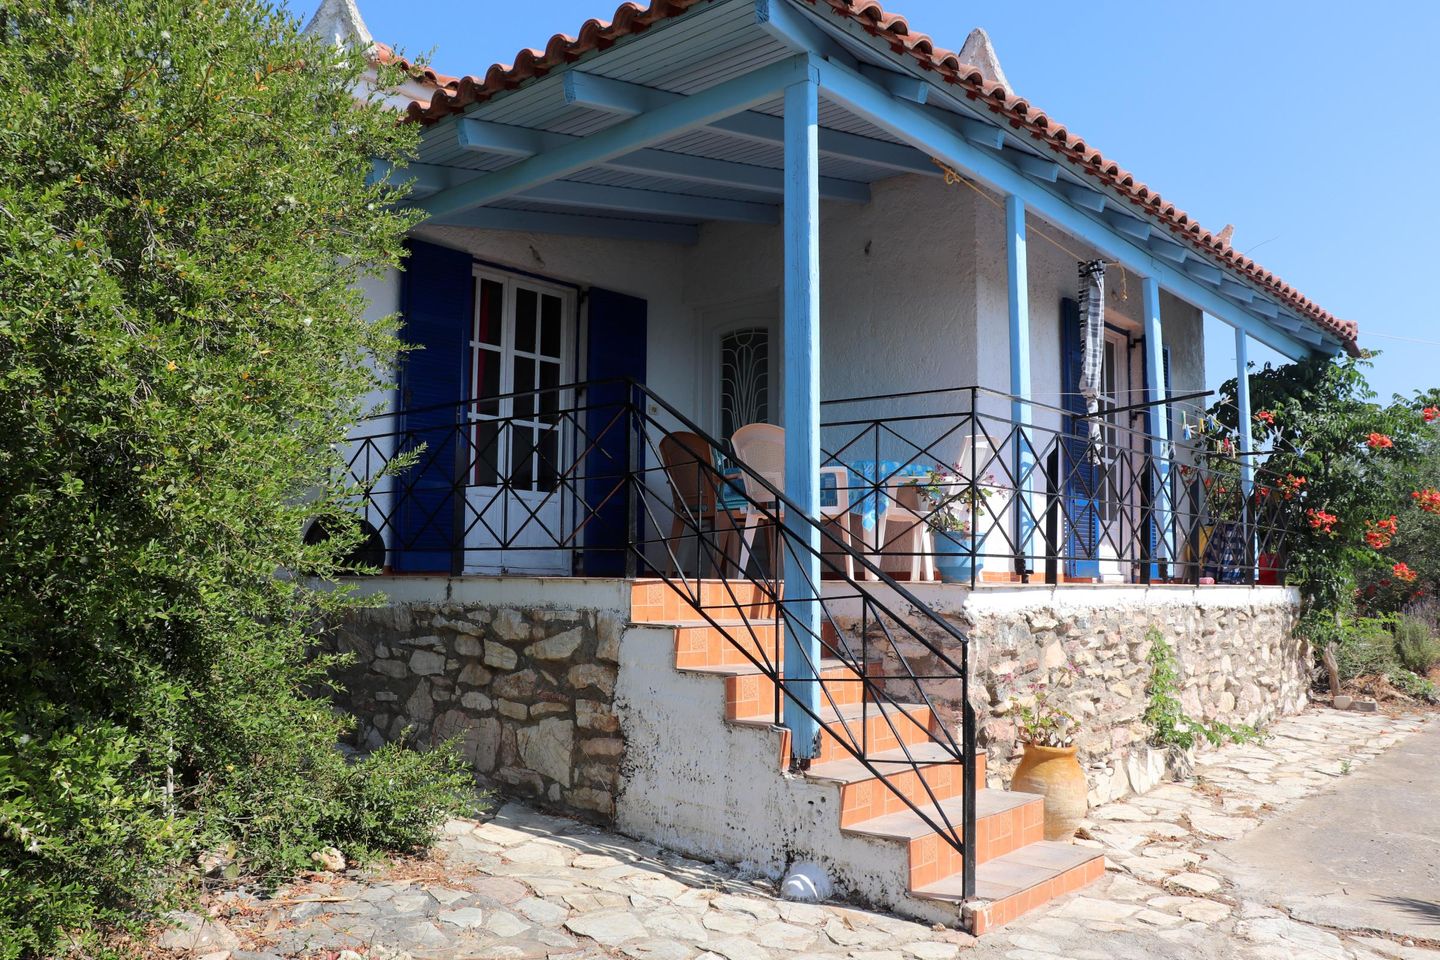 Ferienhaus inmitten von Olivenhainen, Meerblick, W  in Griechenland